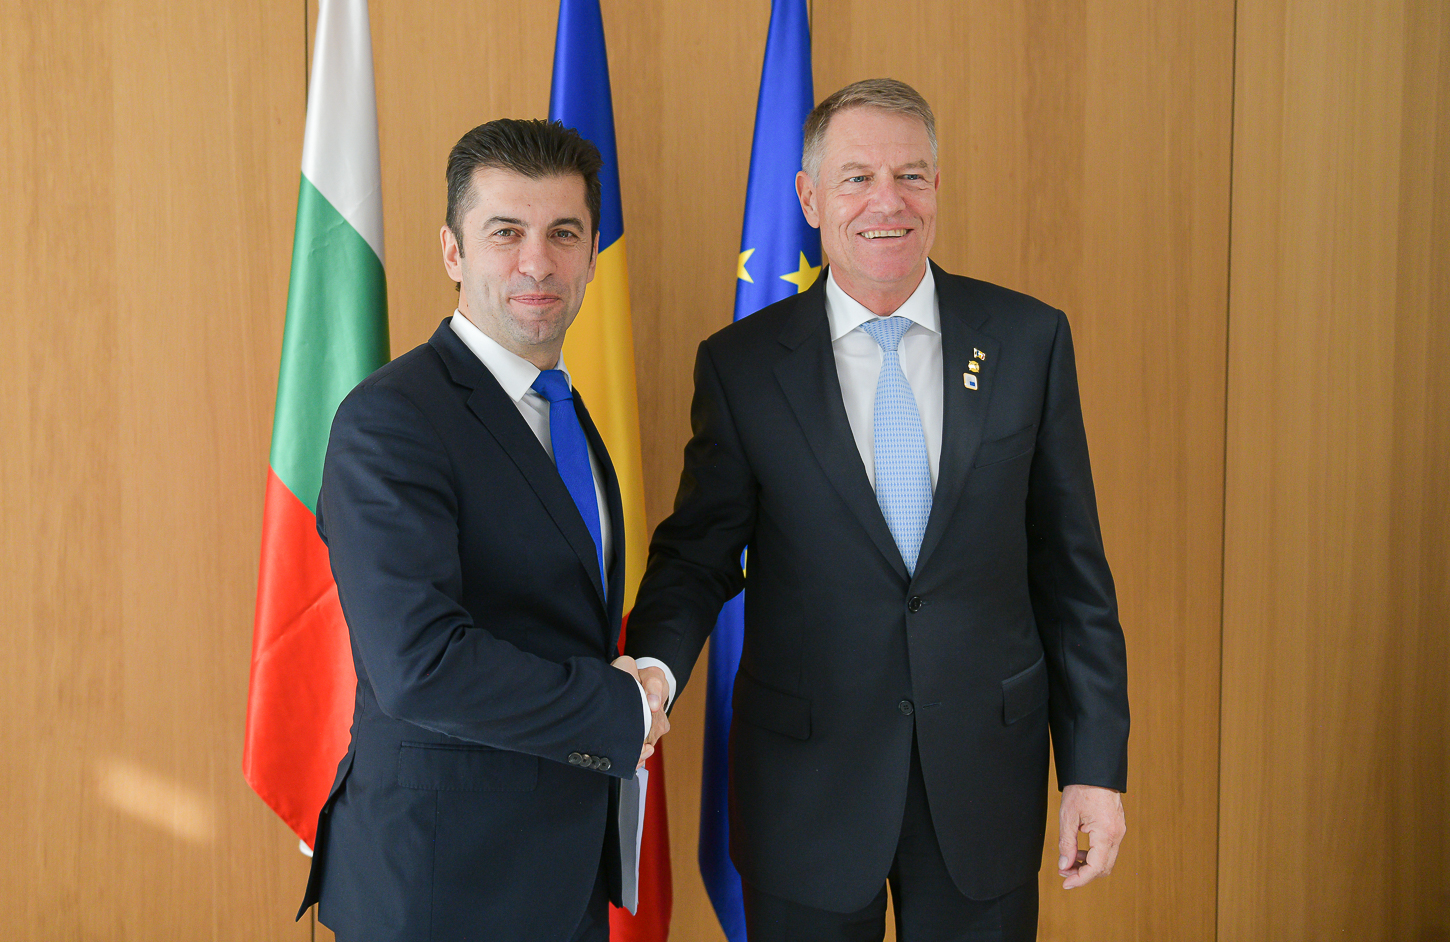 Bulgaristan Başbakanı Petkov, Romanya Cumhurbaşkanı Klaus Johannes ile bir araya geldi